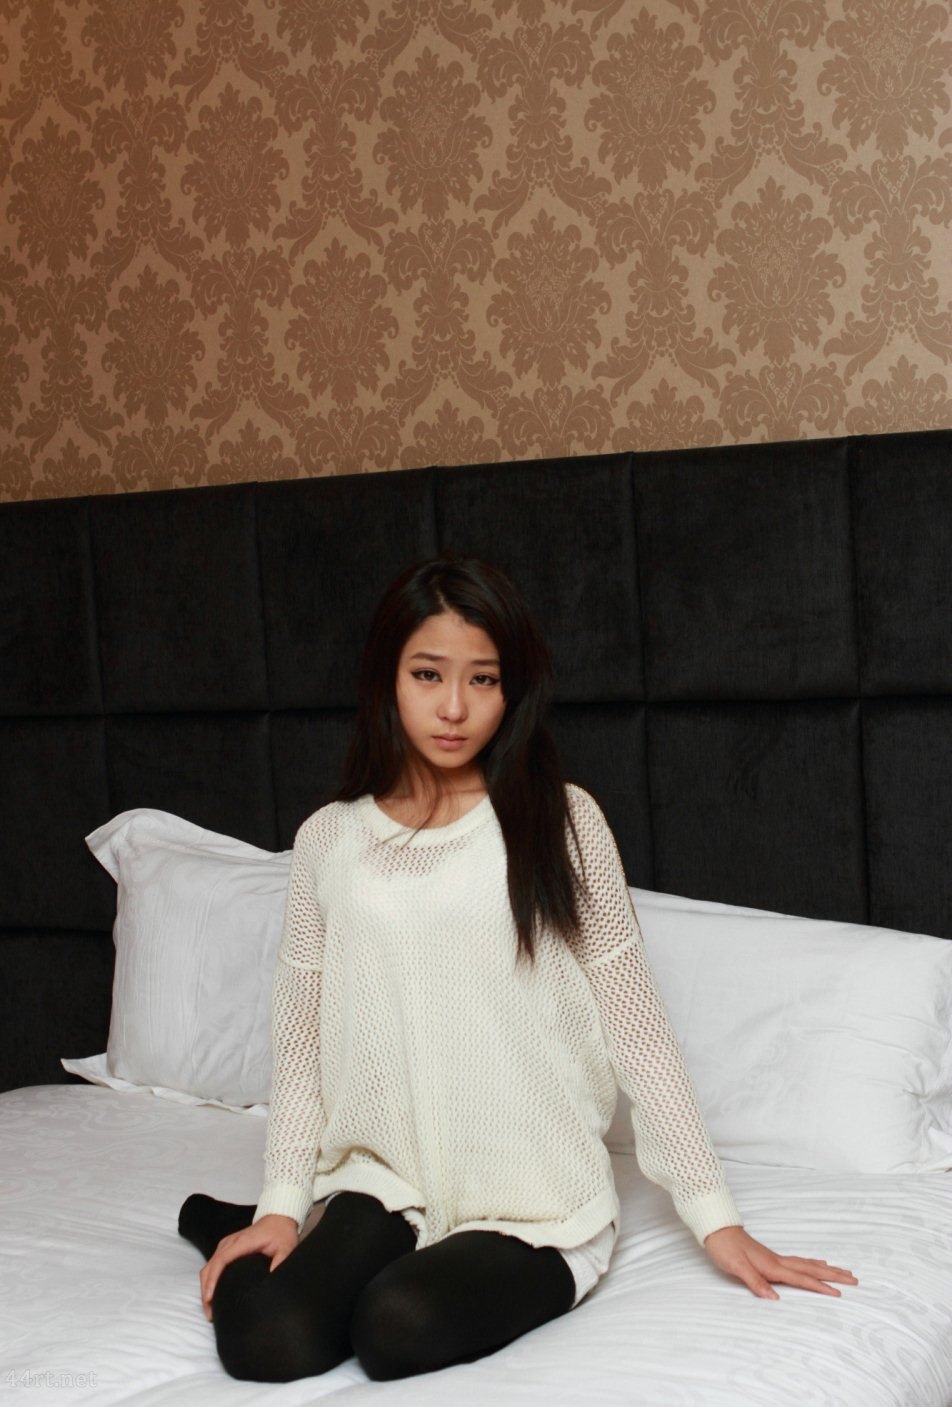 Тело застенчивой девушки-модели Линь Сяокуй в гостиничном номере